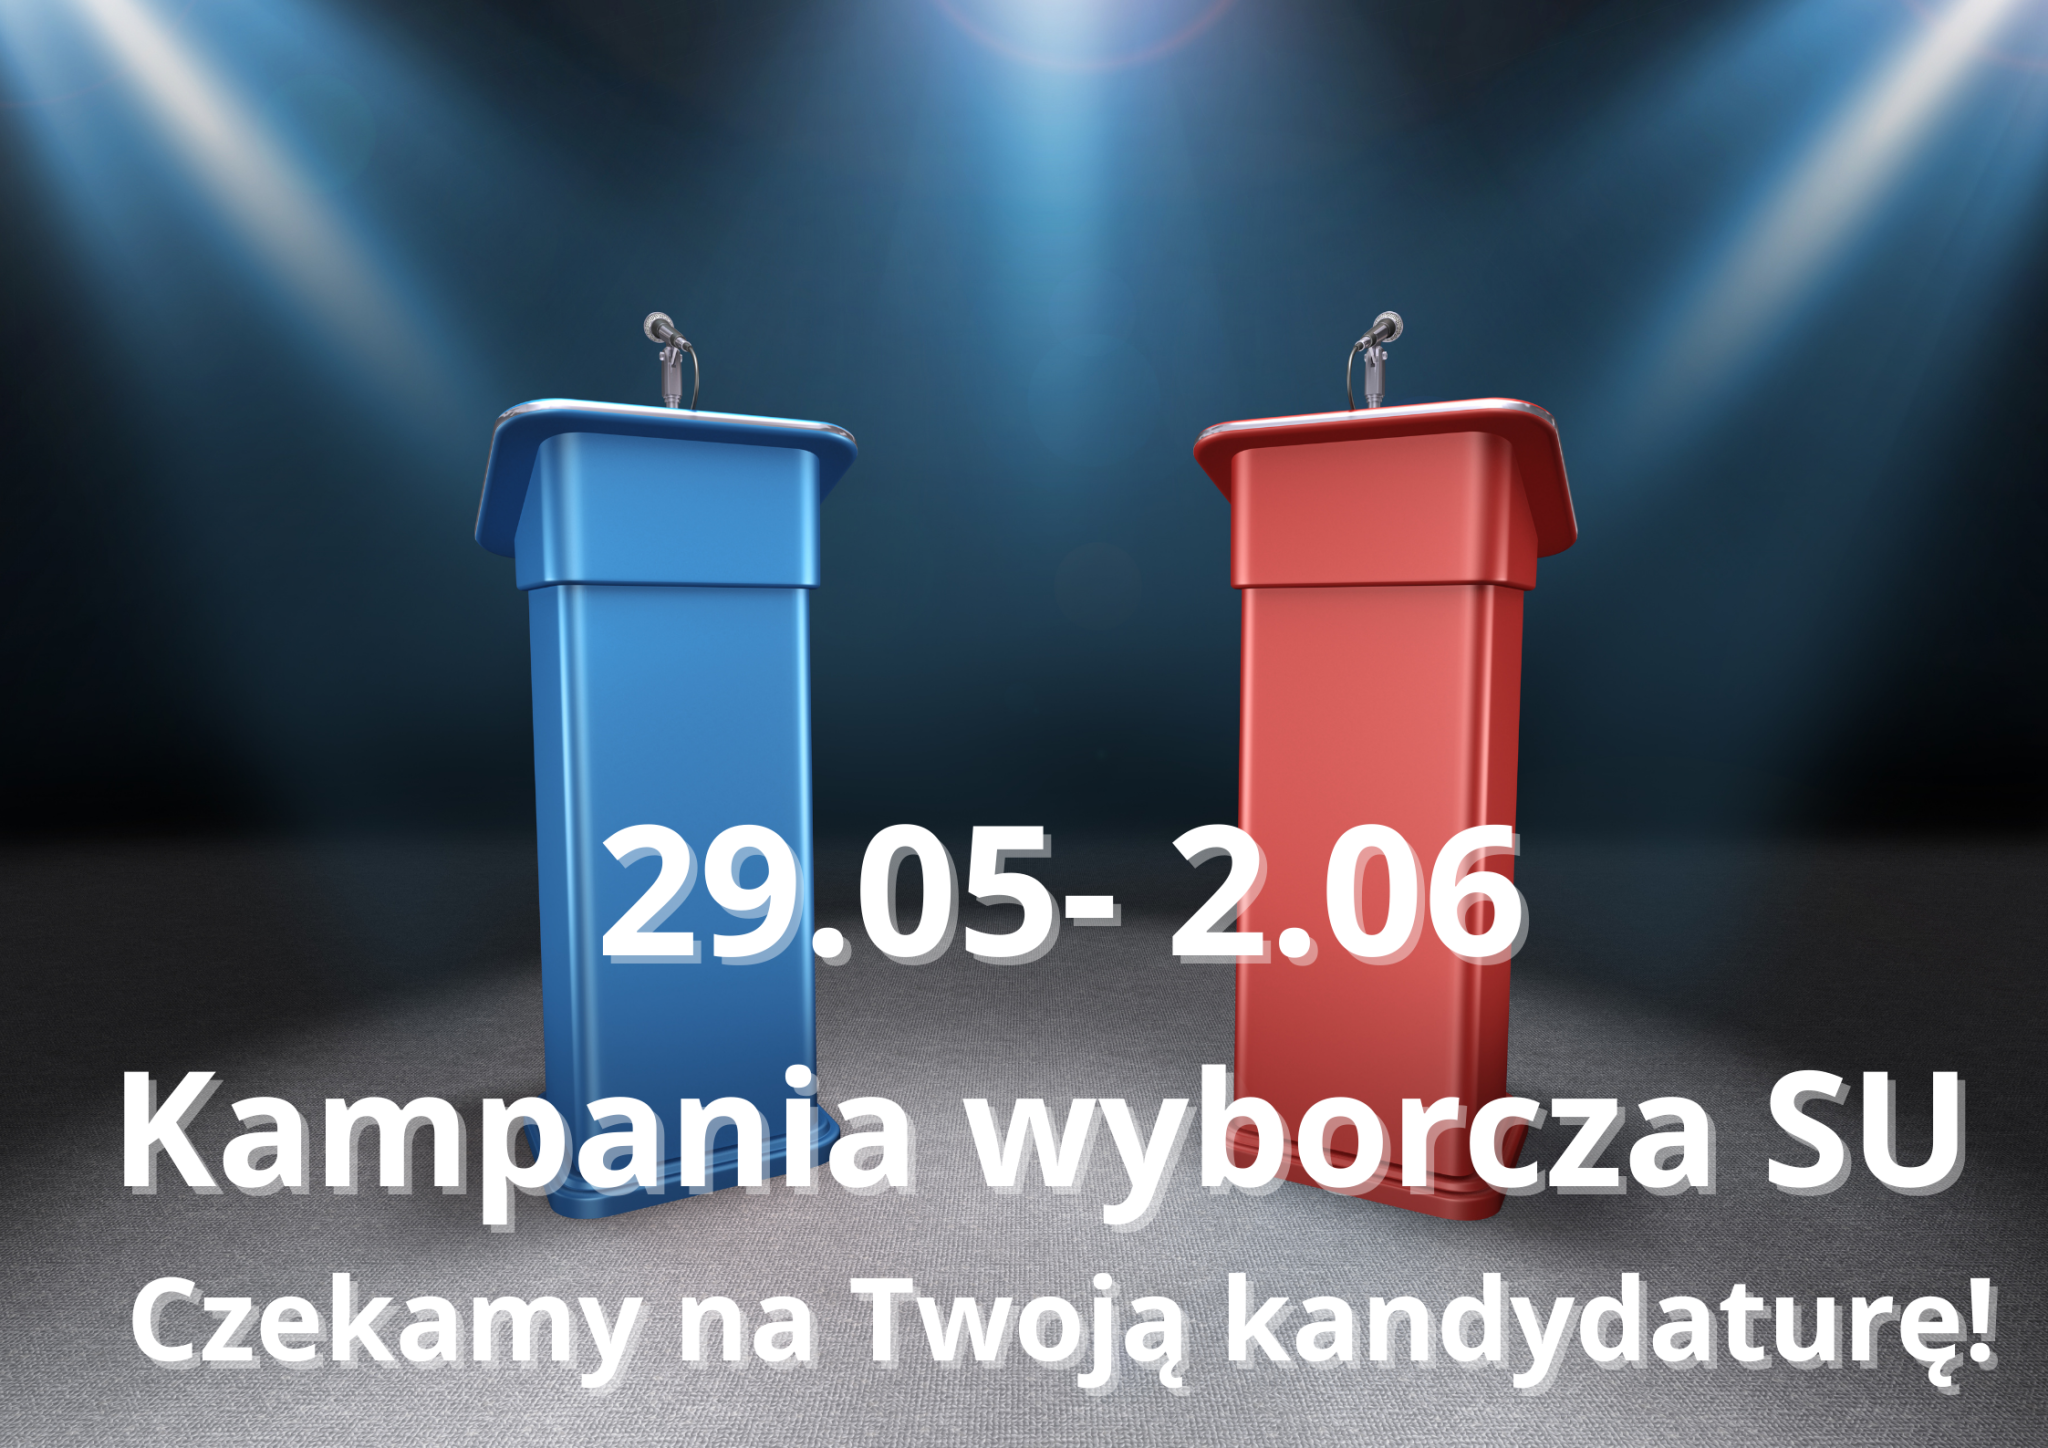 29.05- 2.06 Kampania wyborcza SU Czekamy na Twoją kandydaturę!